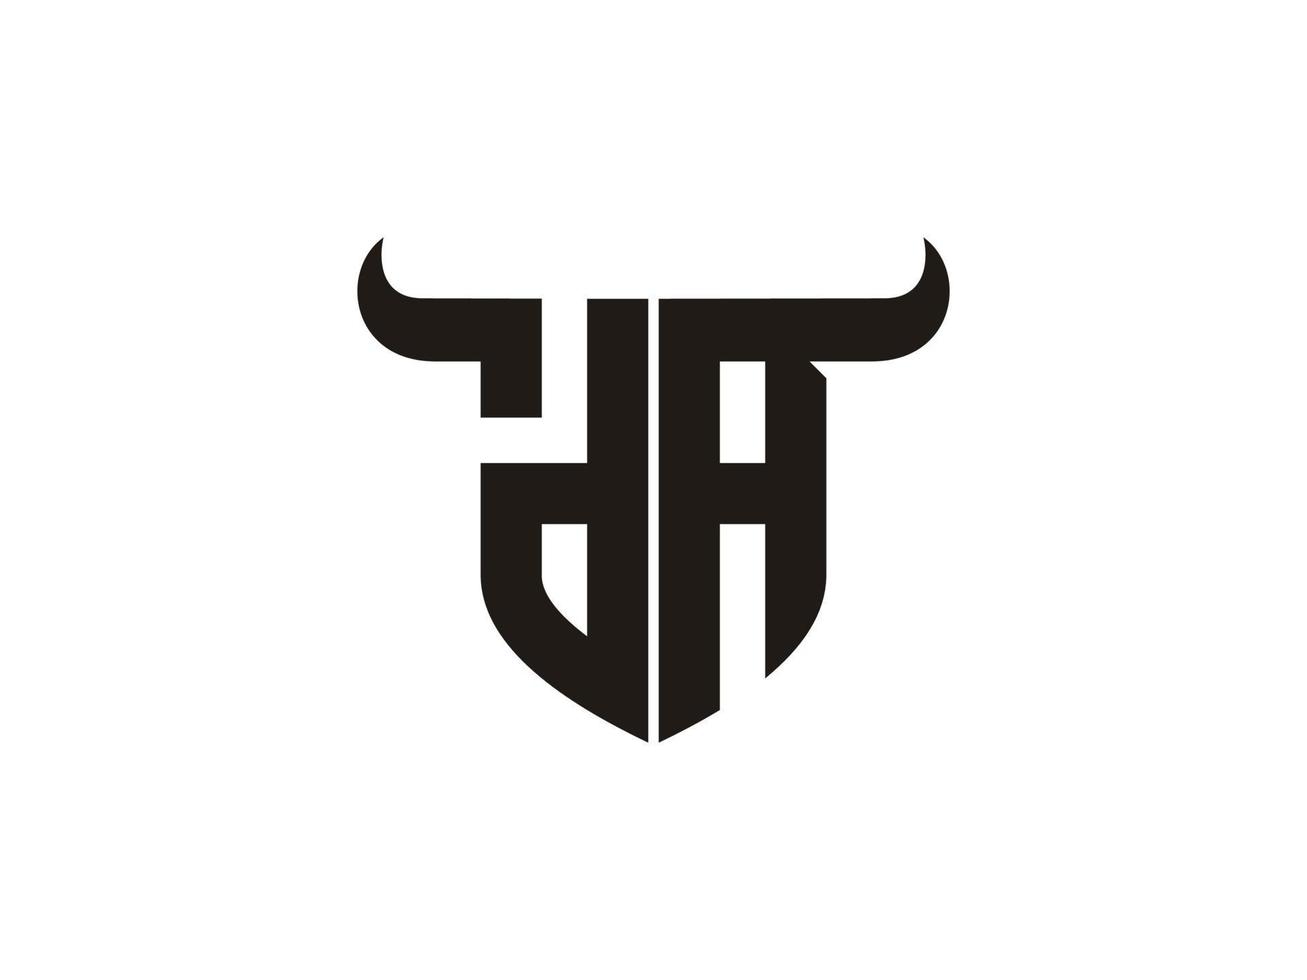 création initiale du logo da bull. vecteur